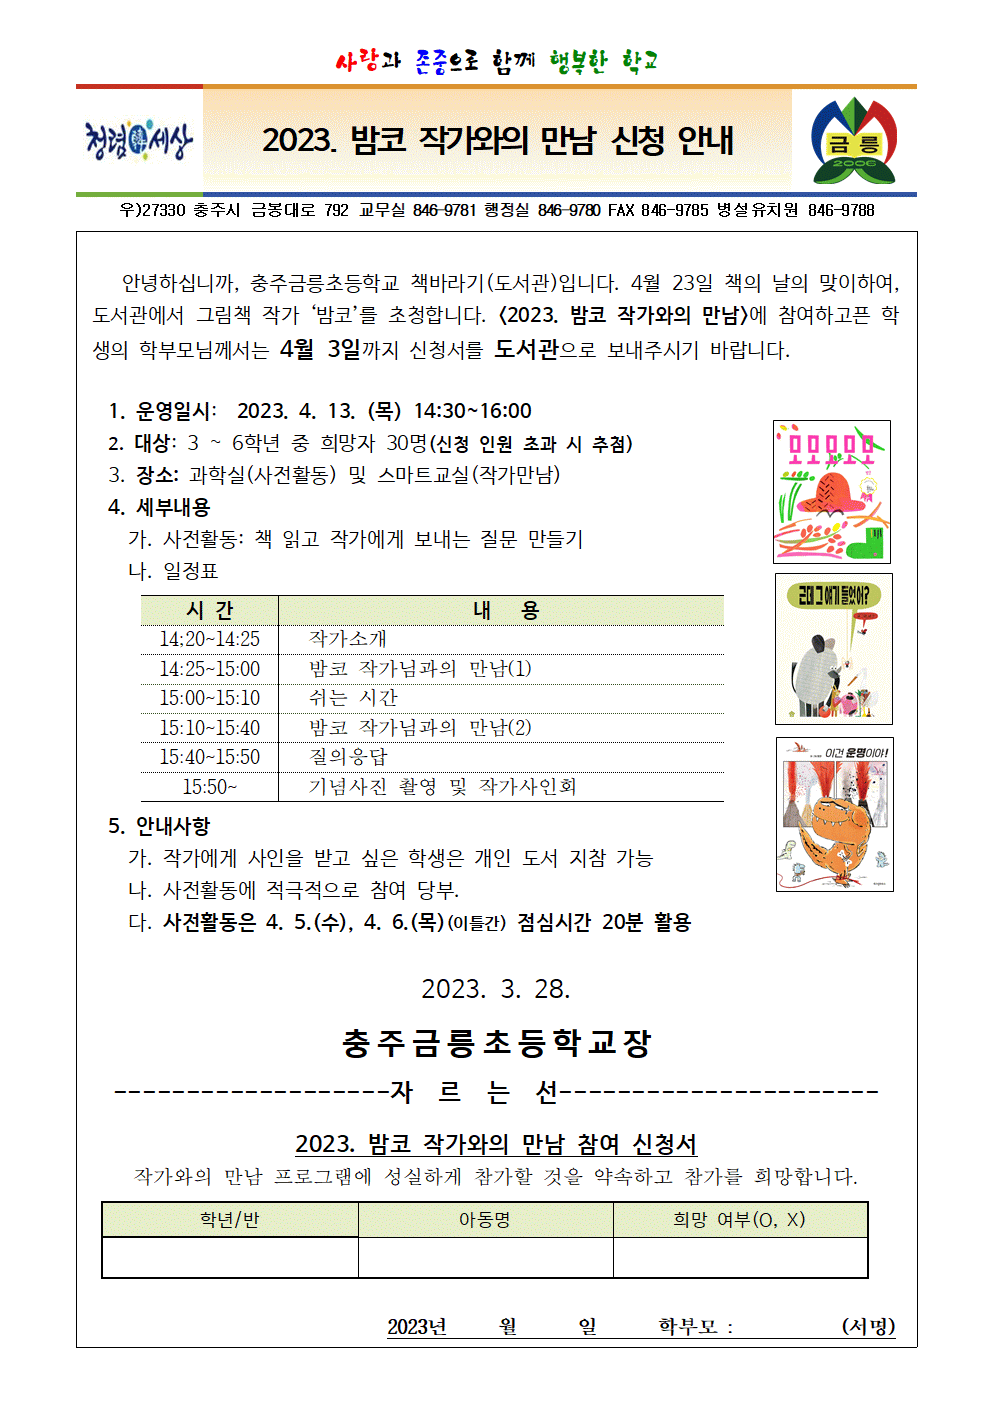 2023. 밤코작가와의 만남 신청안내(가정통신문)001